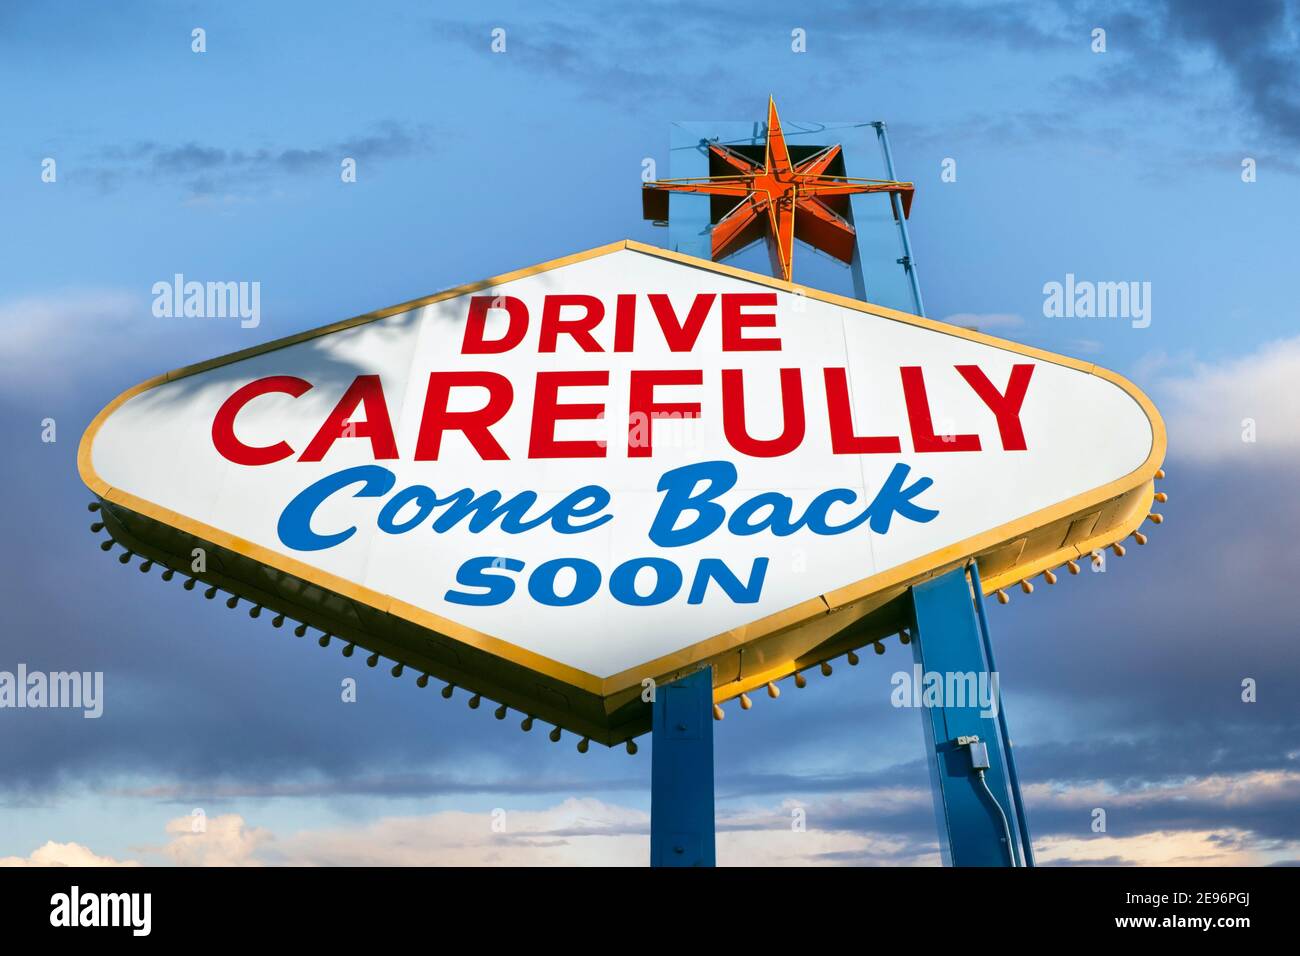 Fahren Sie vorsichtig, kommen Sie bald wieder. Rückseite des berühmten Welcome to Las Vegas-Schilds. Stockfoto